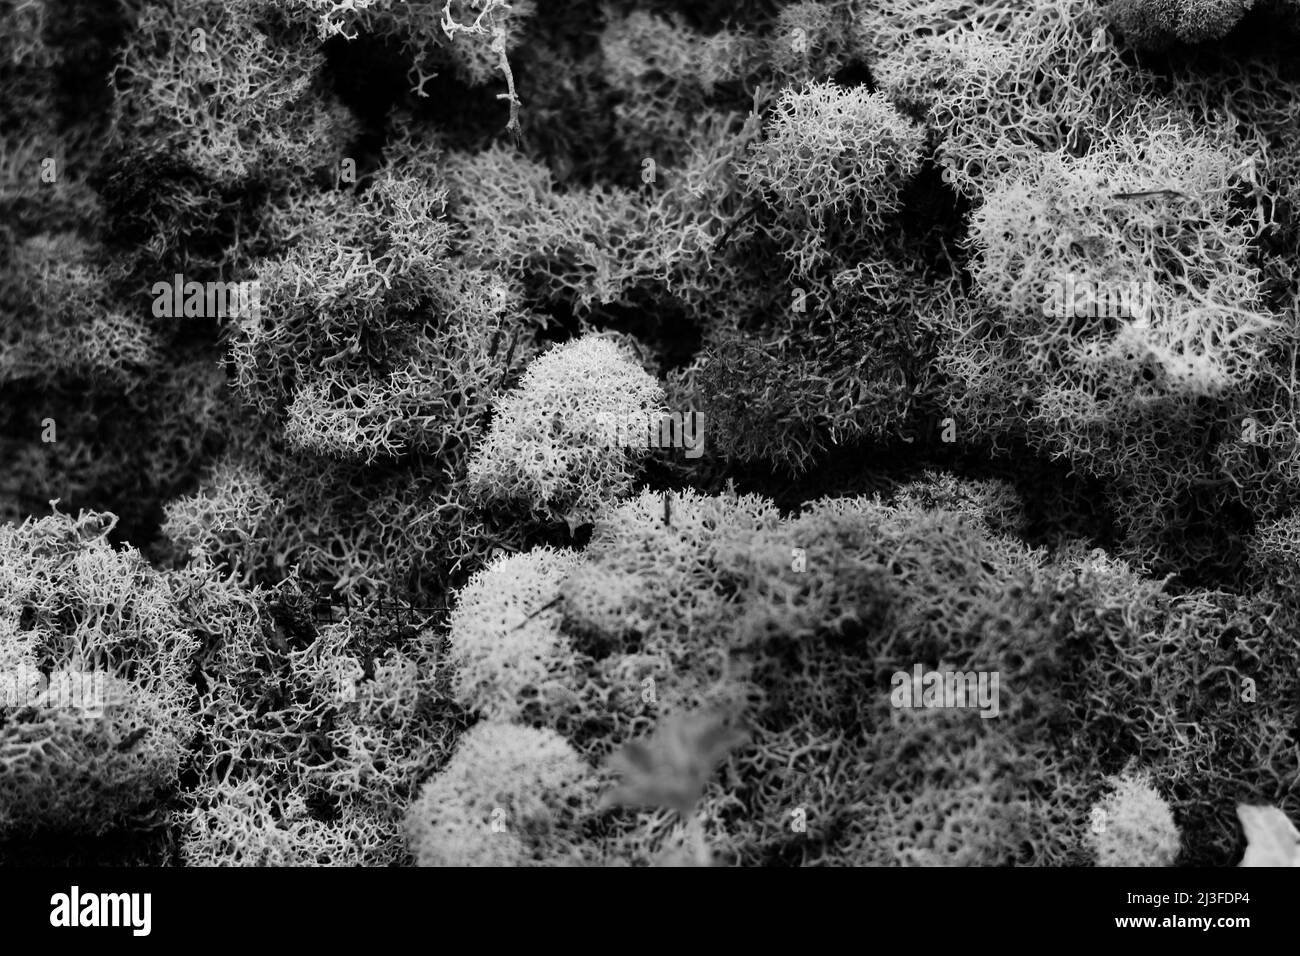 Klumpiges, holpriges Moos, das auf dem Boden in Schwarz und Weiß wächst. Stockfoto